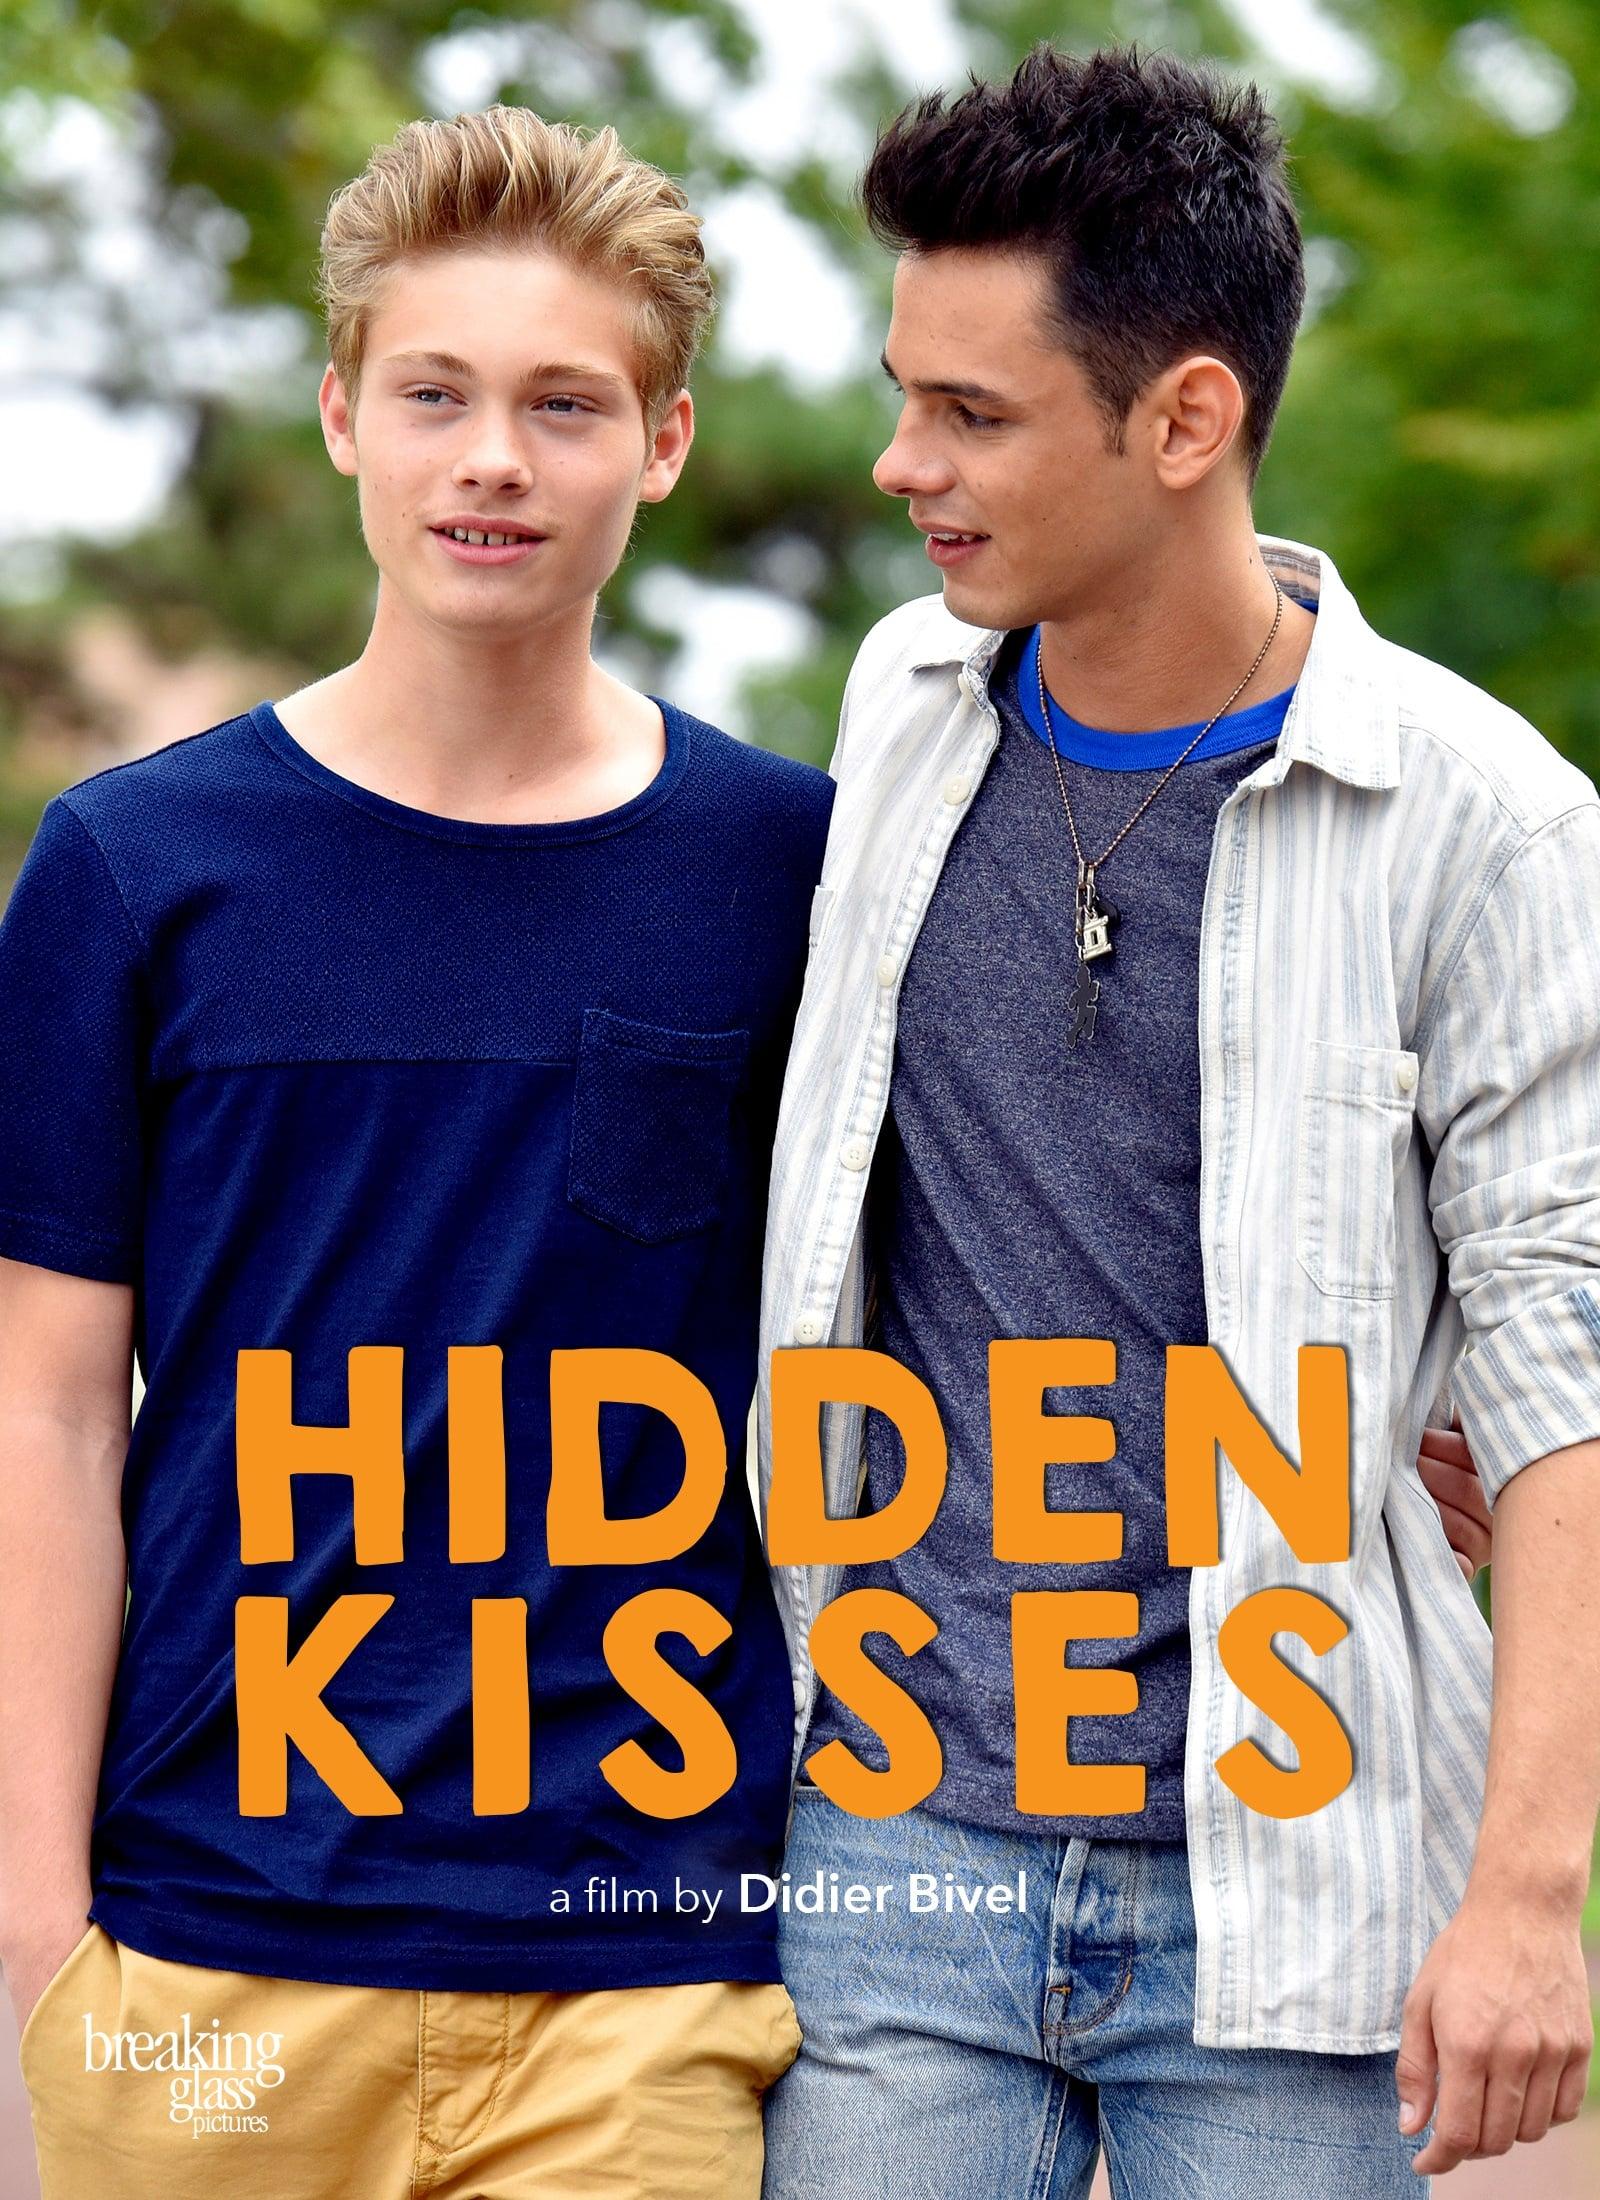 Hidden Kisses poster